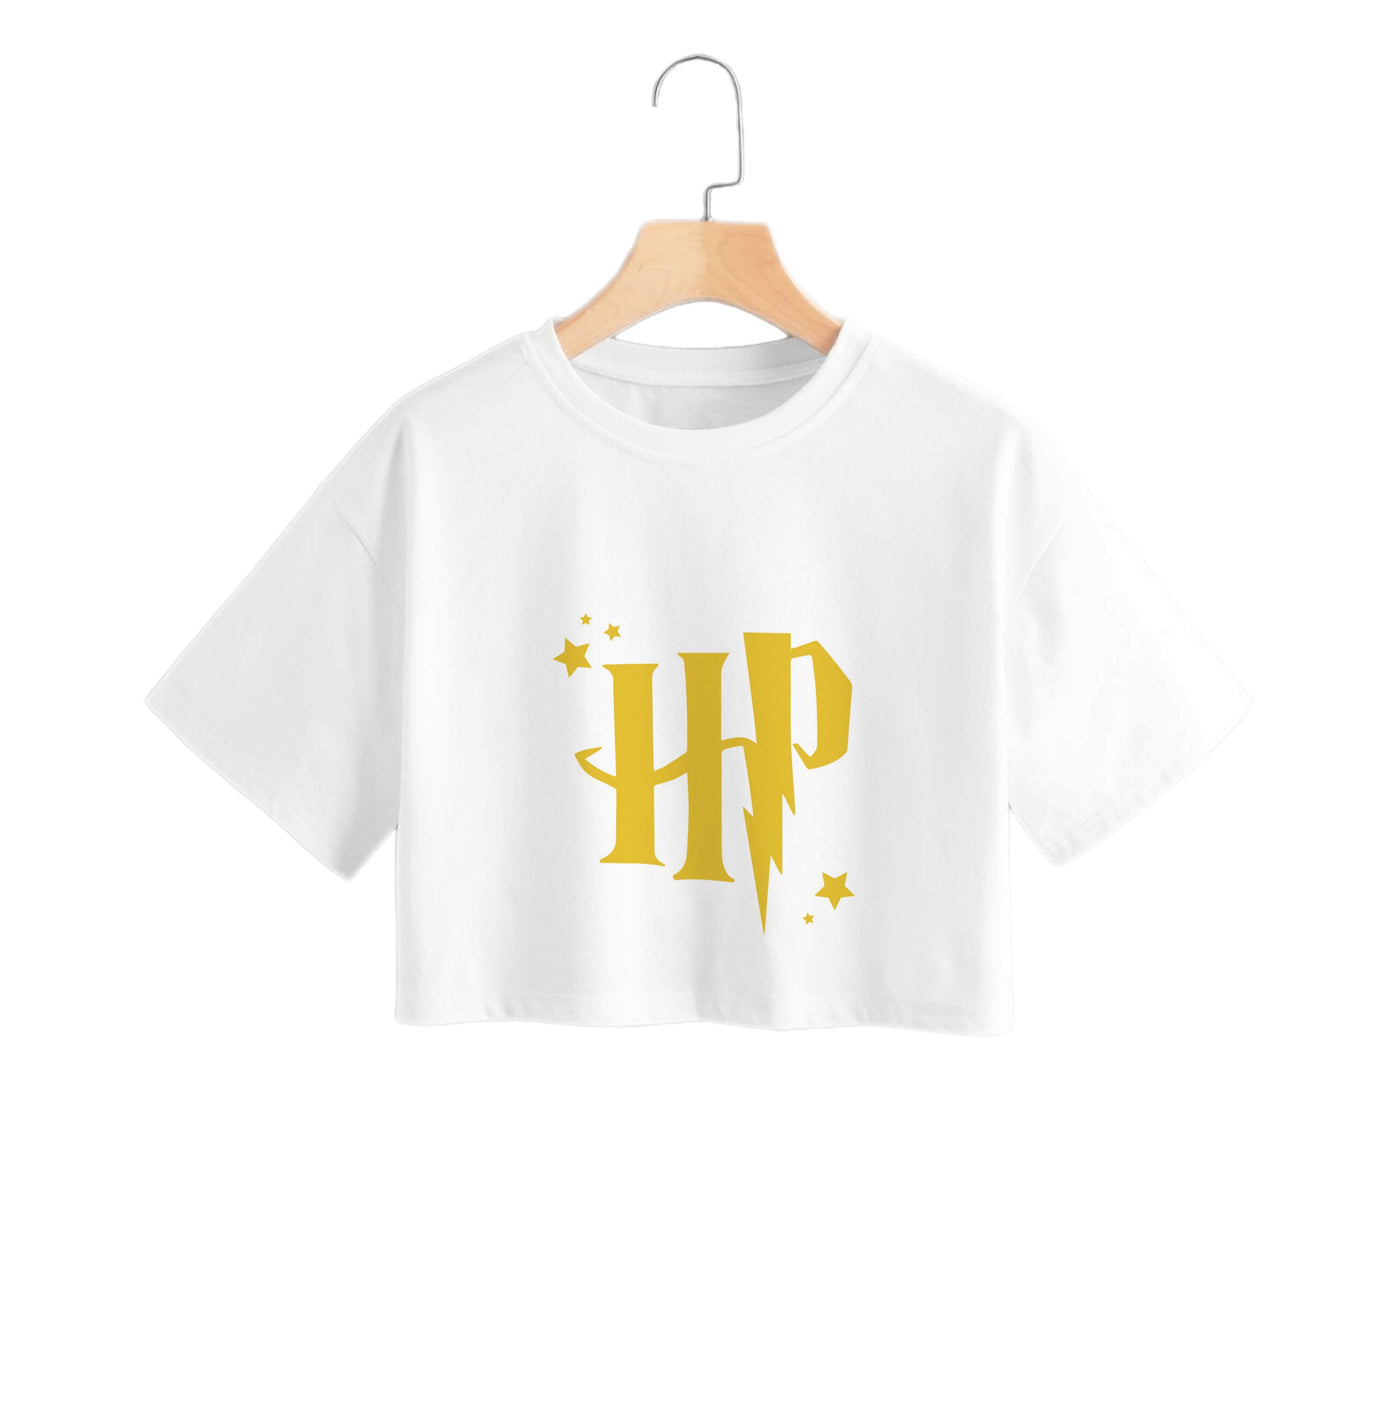 HP - Harry Potter Crop Top